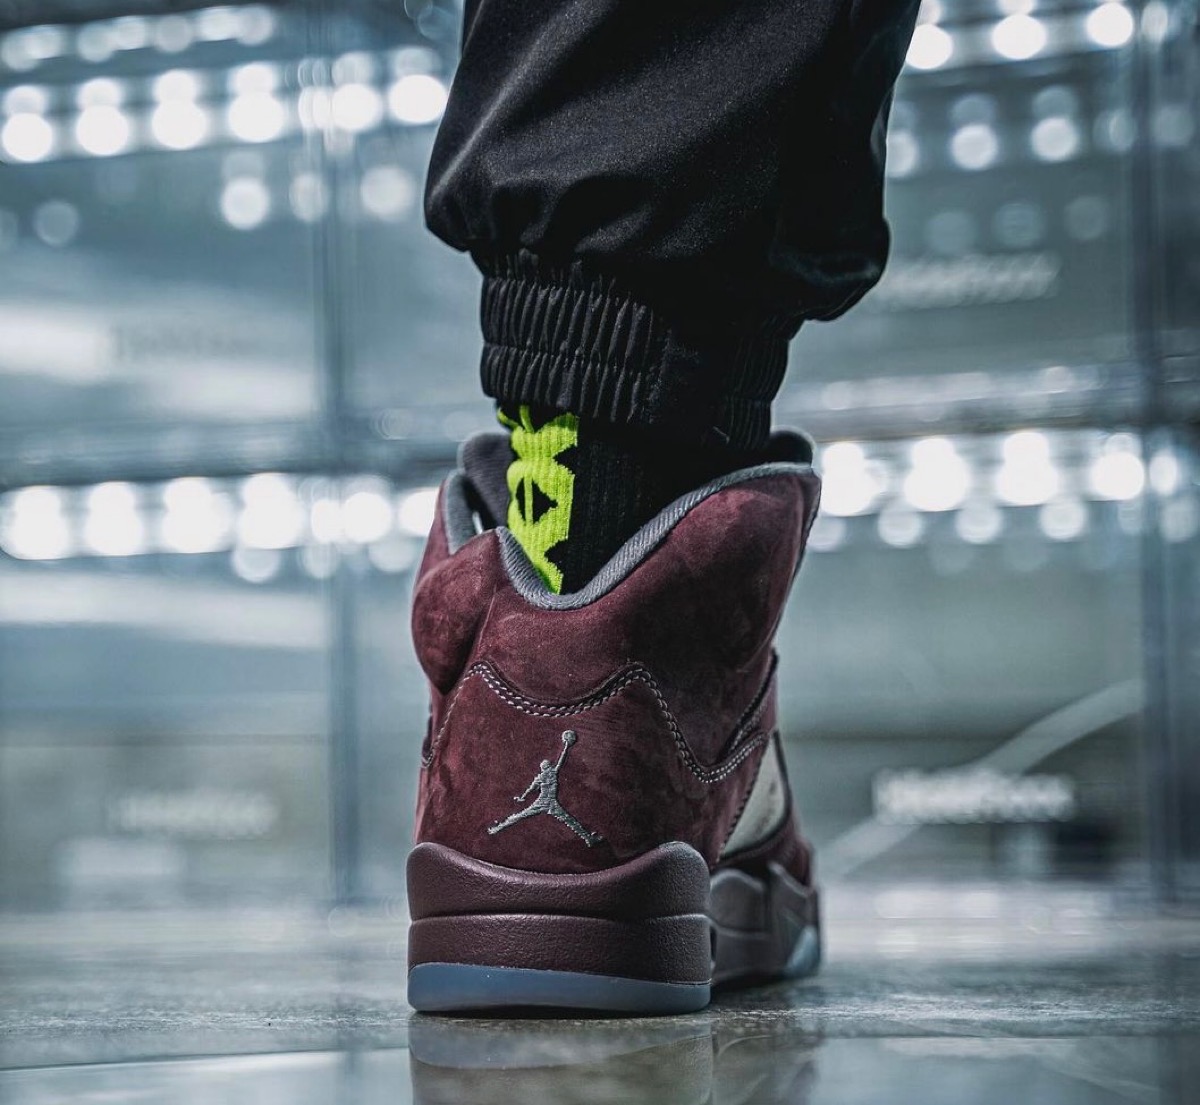 Nike Air Jordan 5 Retro SE “Burgundy”が国内近日復刻発売予定 